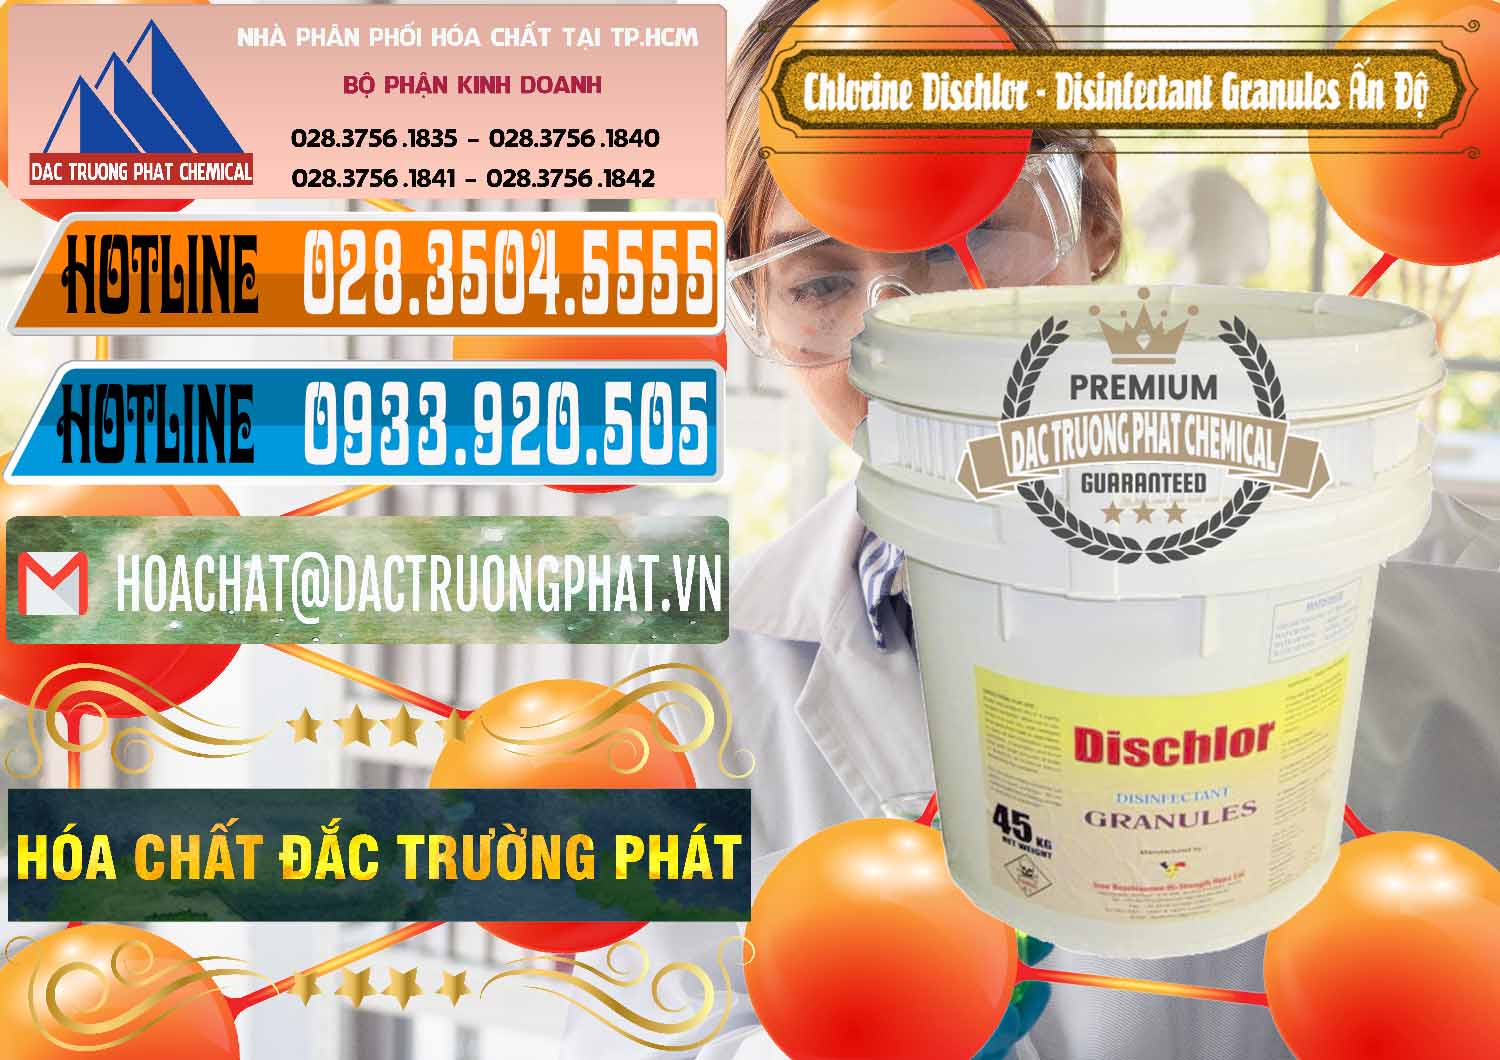 Nơi chuyên bán và cung ứng Chlorine – Clorin 70% Dischlor - Disinfectant Granules Ấn Độ India - 0248 - Cty phân phối và cung ứng hóa chất tại TP.HCM - stmp.net